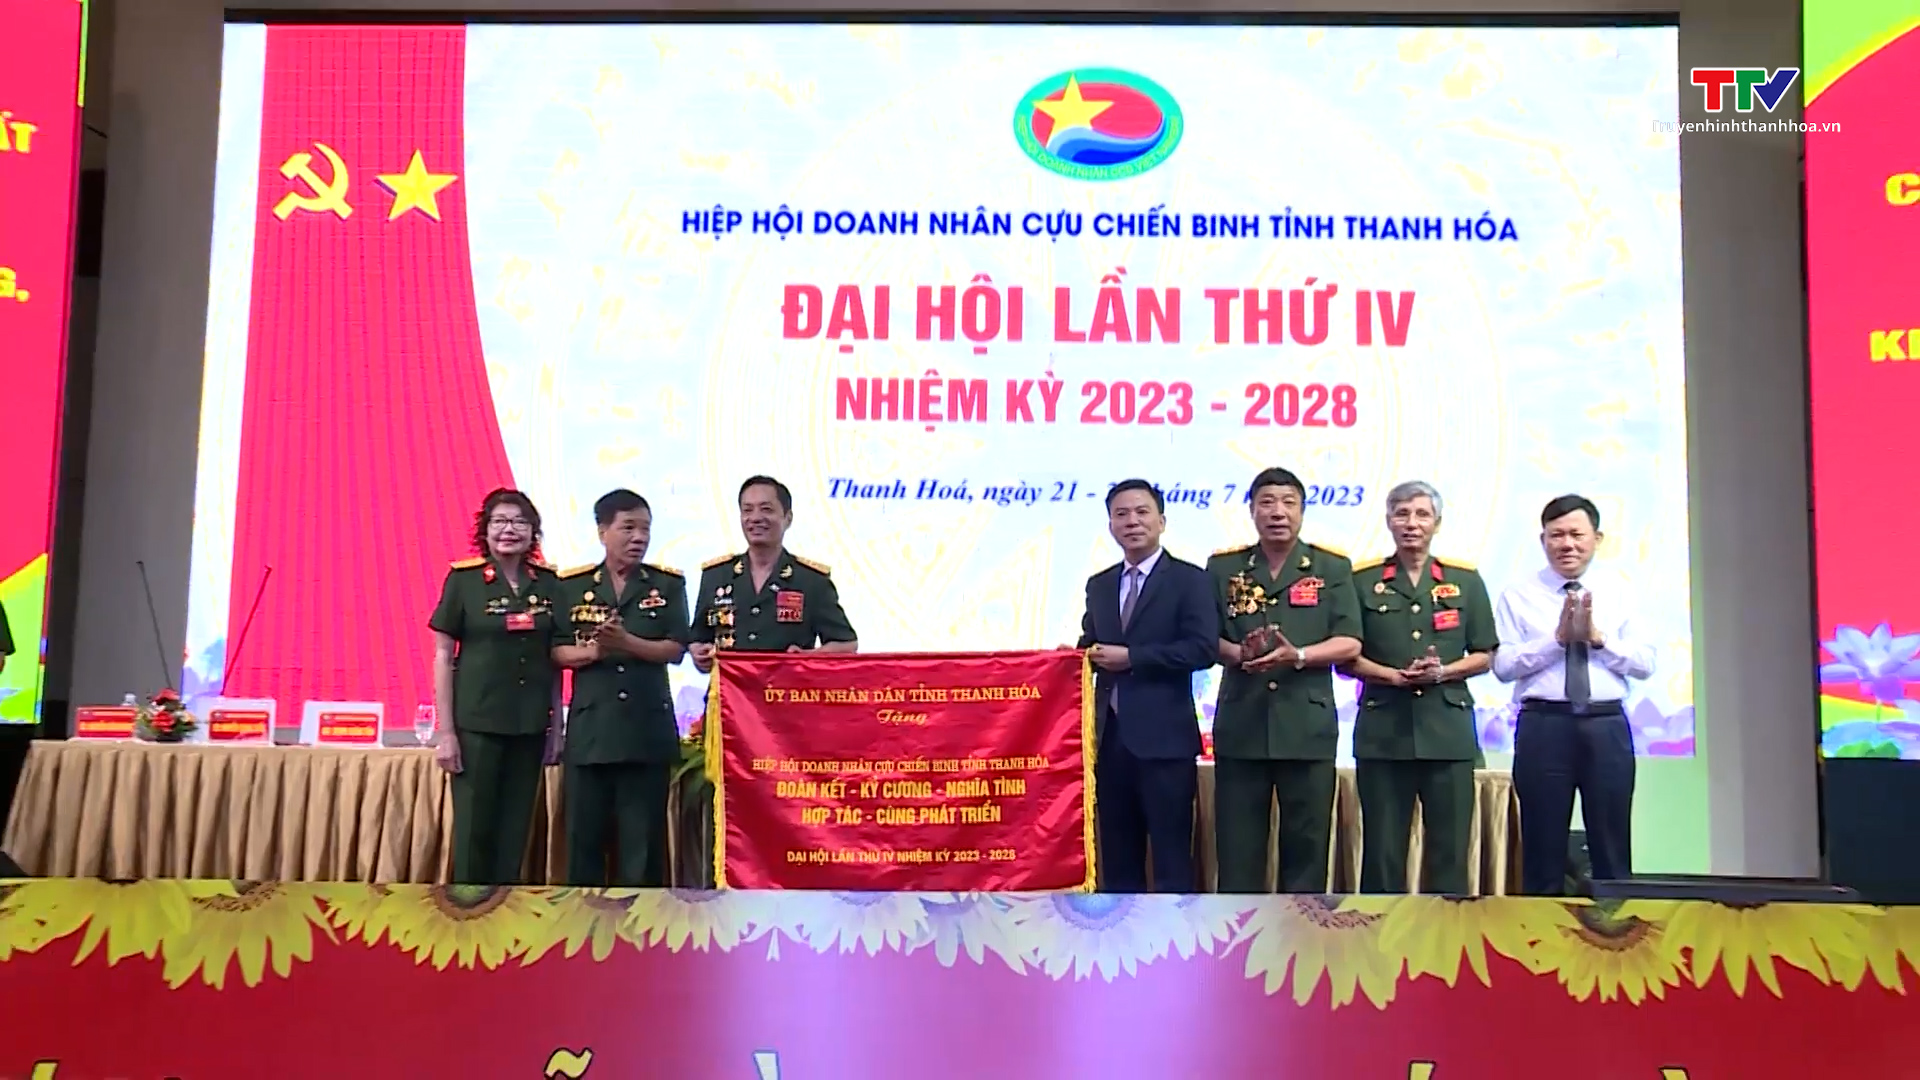 Đại hội lần thứ IV Hiệp hội doanh nhân Cựu chiến binh tỉnh Thanh Hóa - Ảnh 6.